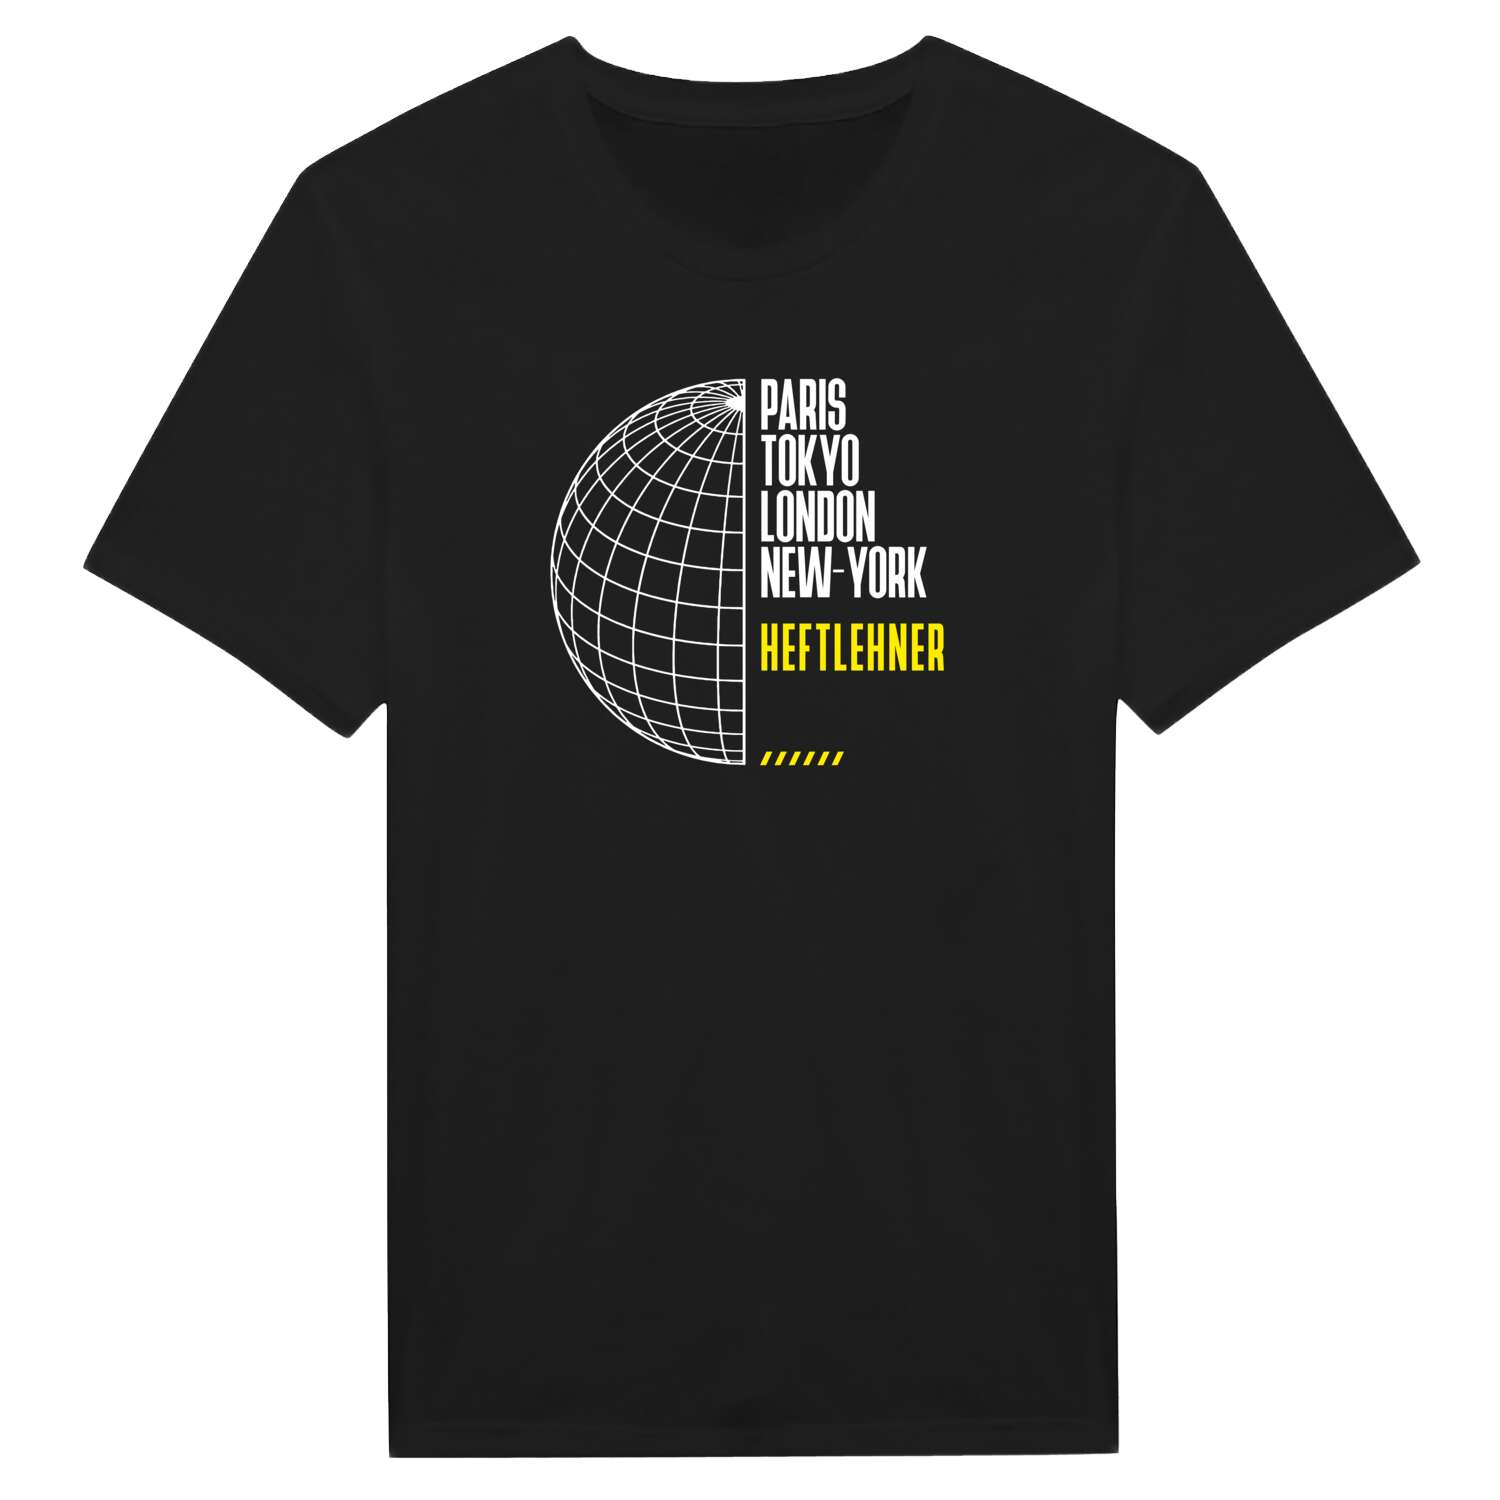 Heftlehner T-Shirt »Paris Tokyo London«